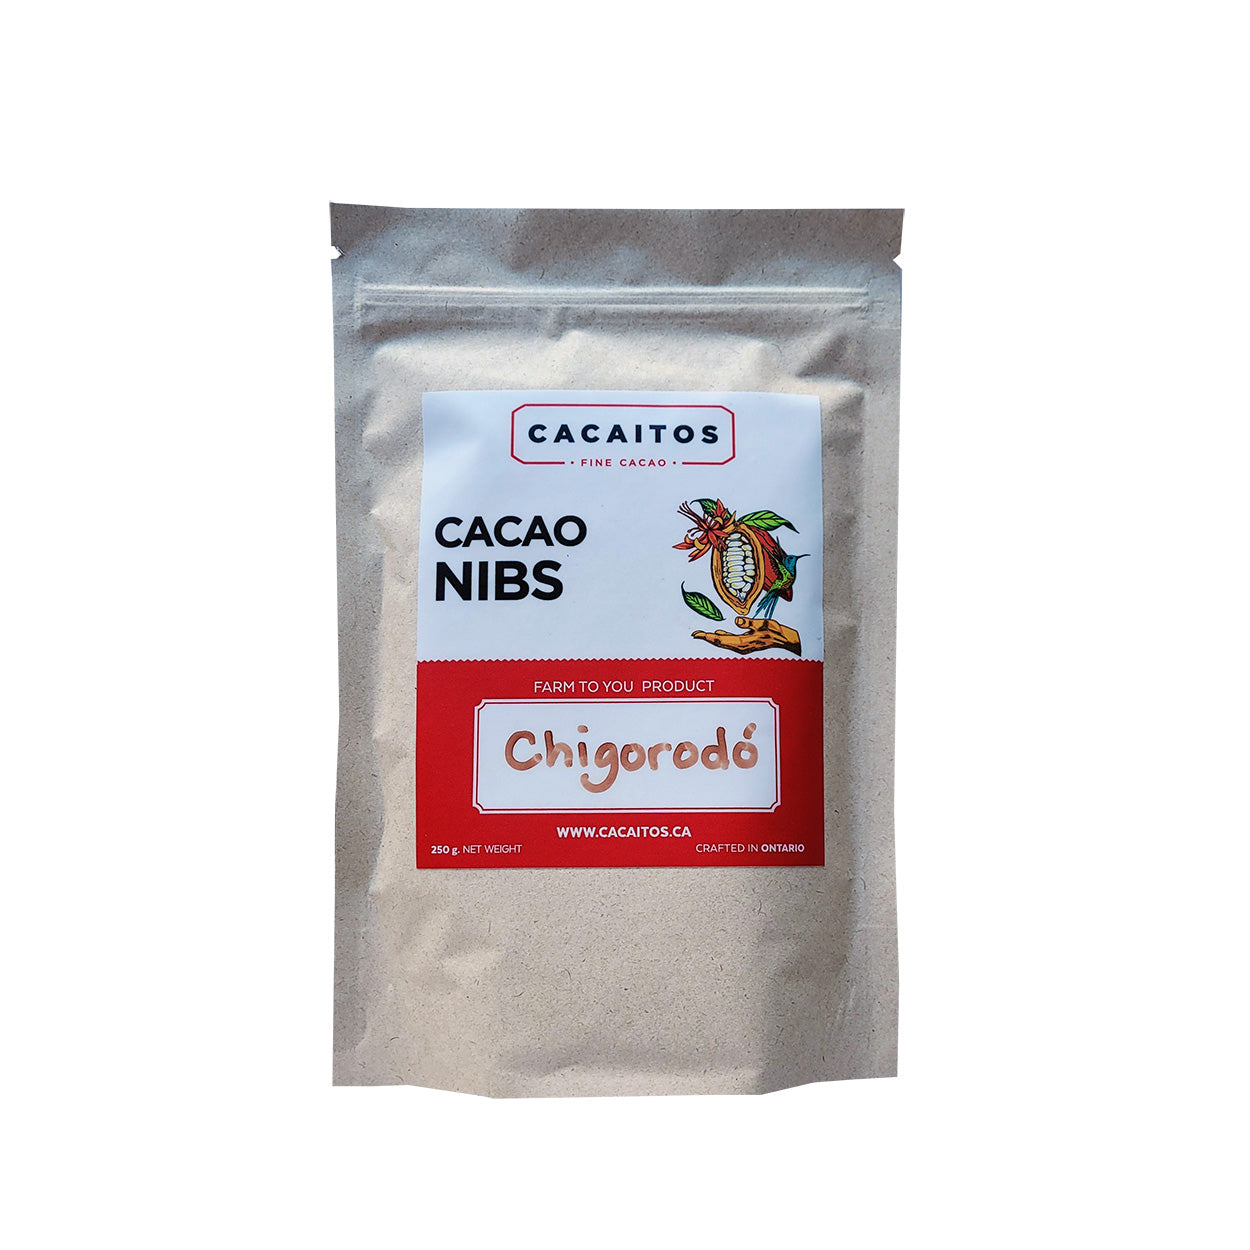 Cacaitos Cacao Nibs - Chigorodo